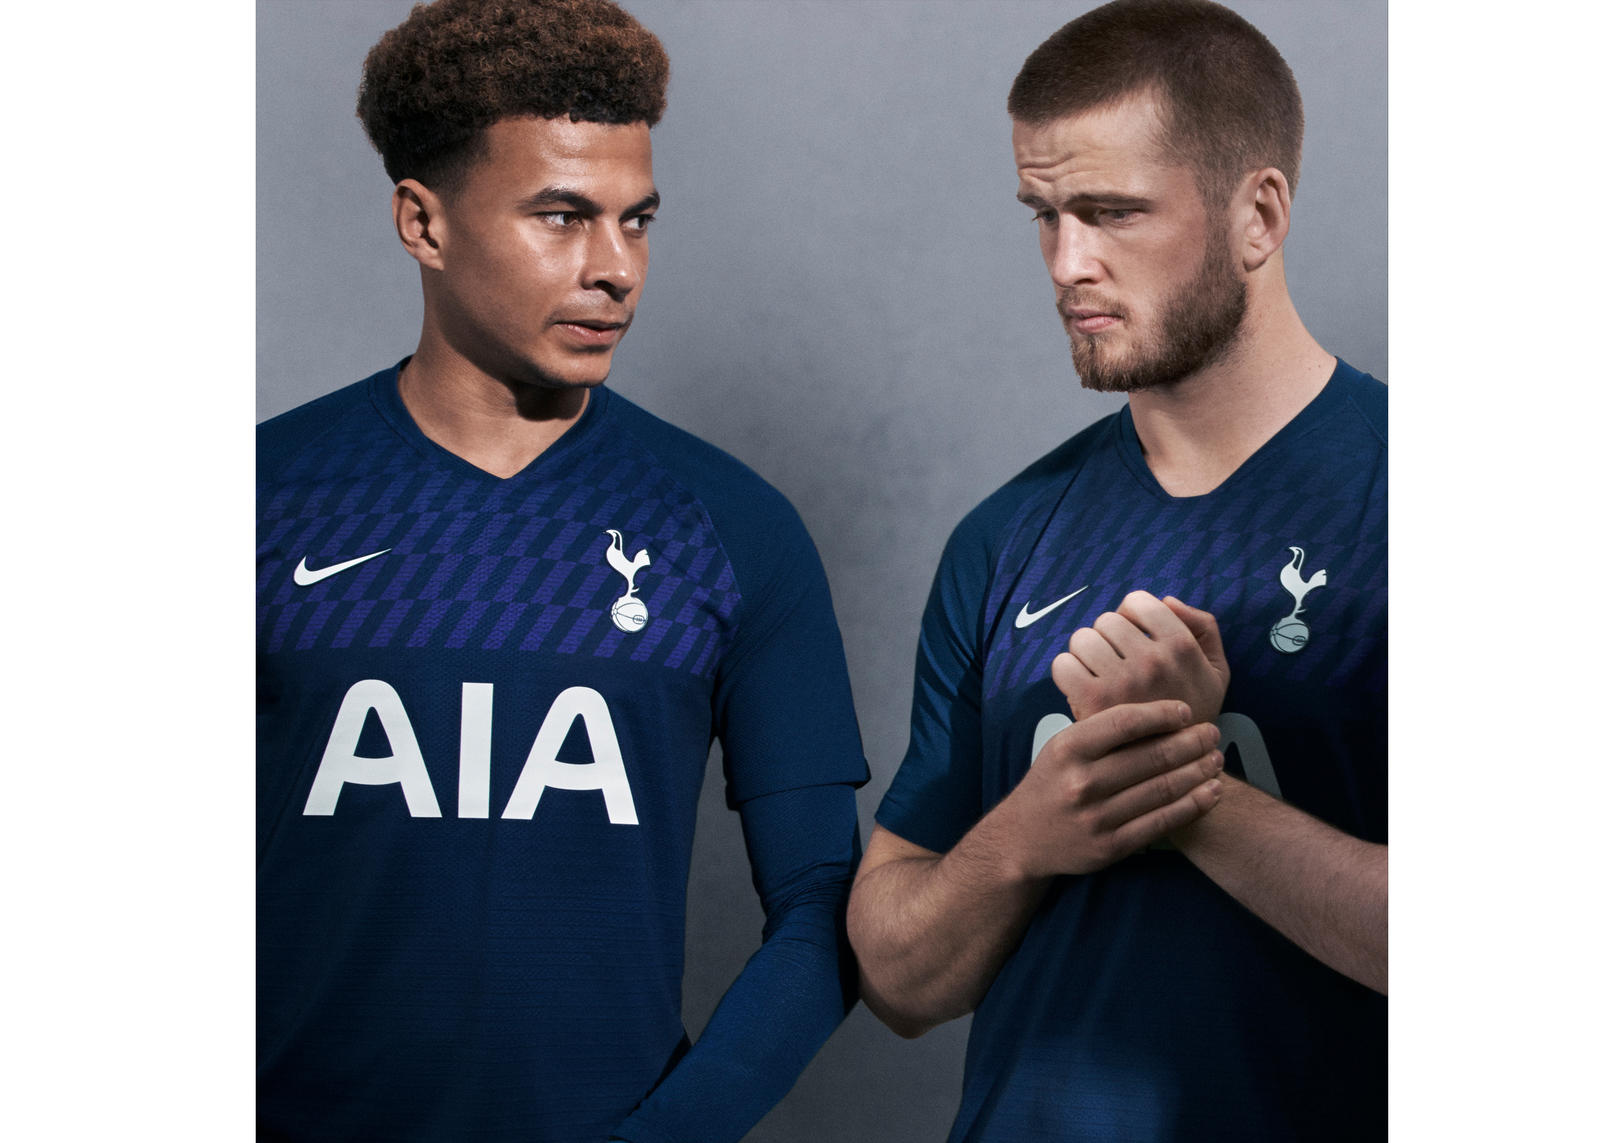 Tottenham Hotspur 2019-20 Kits